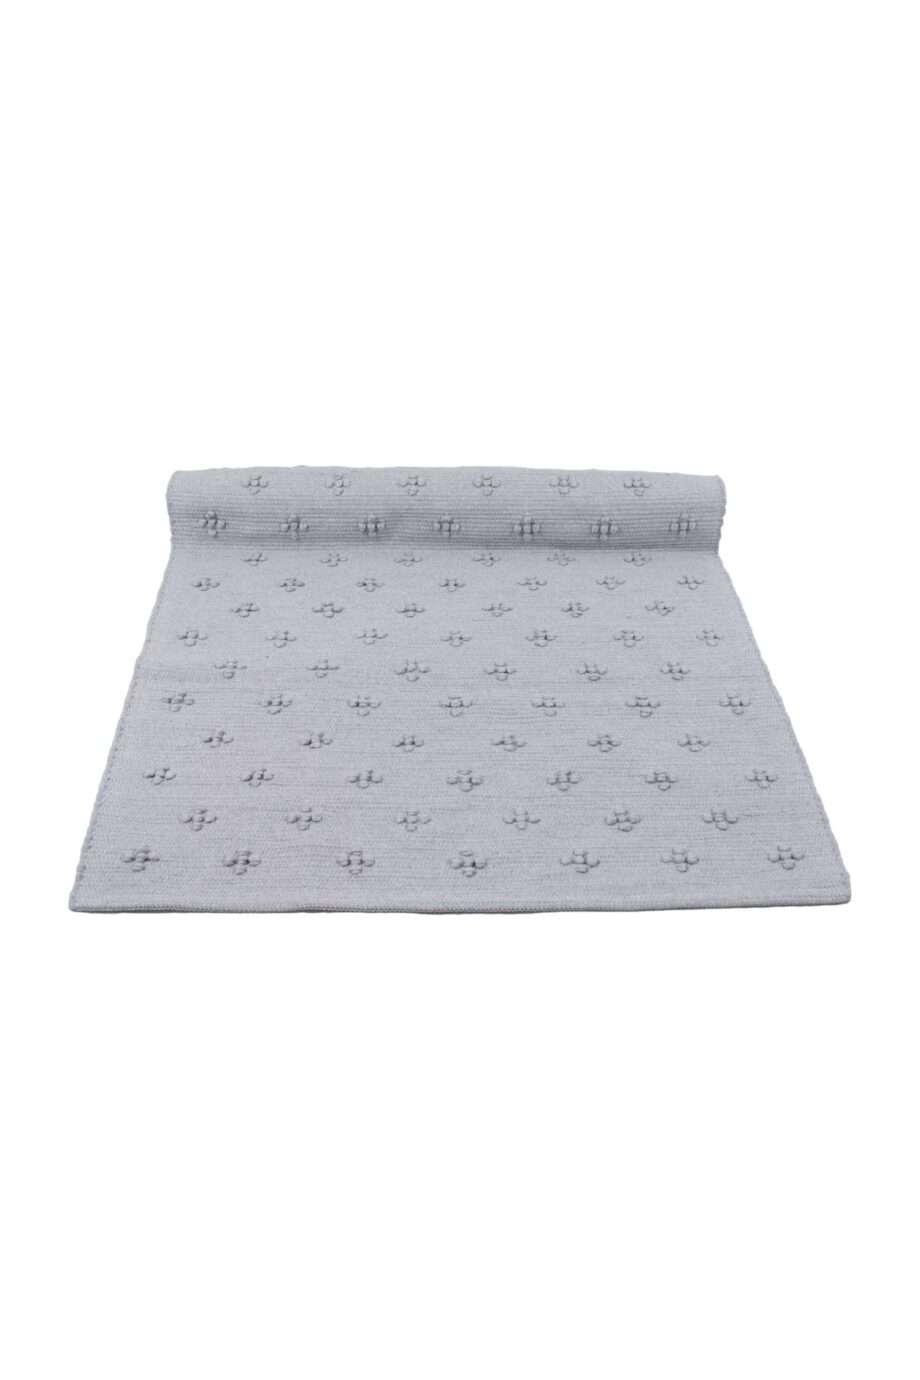 liz light grey woven cotton floor mat small